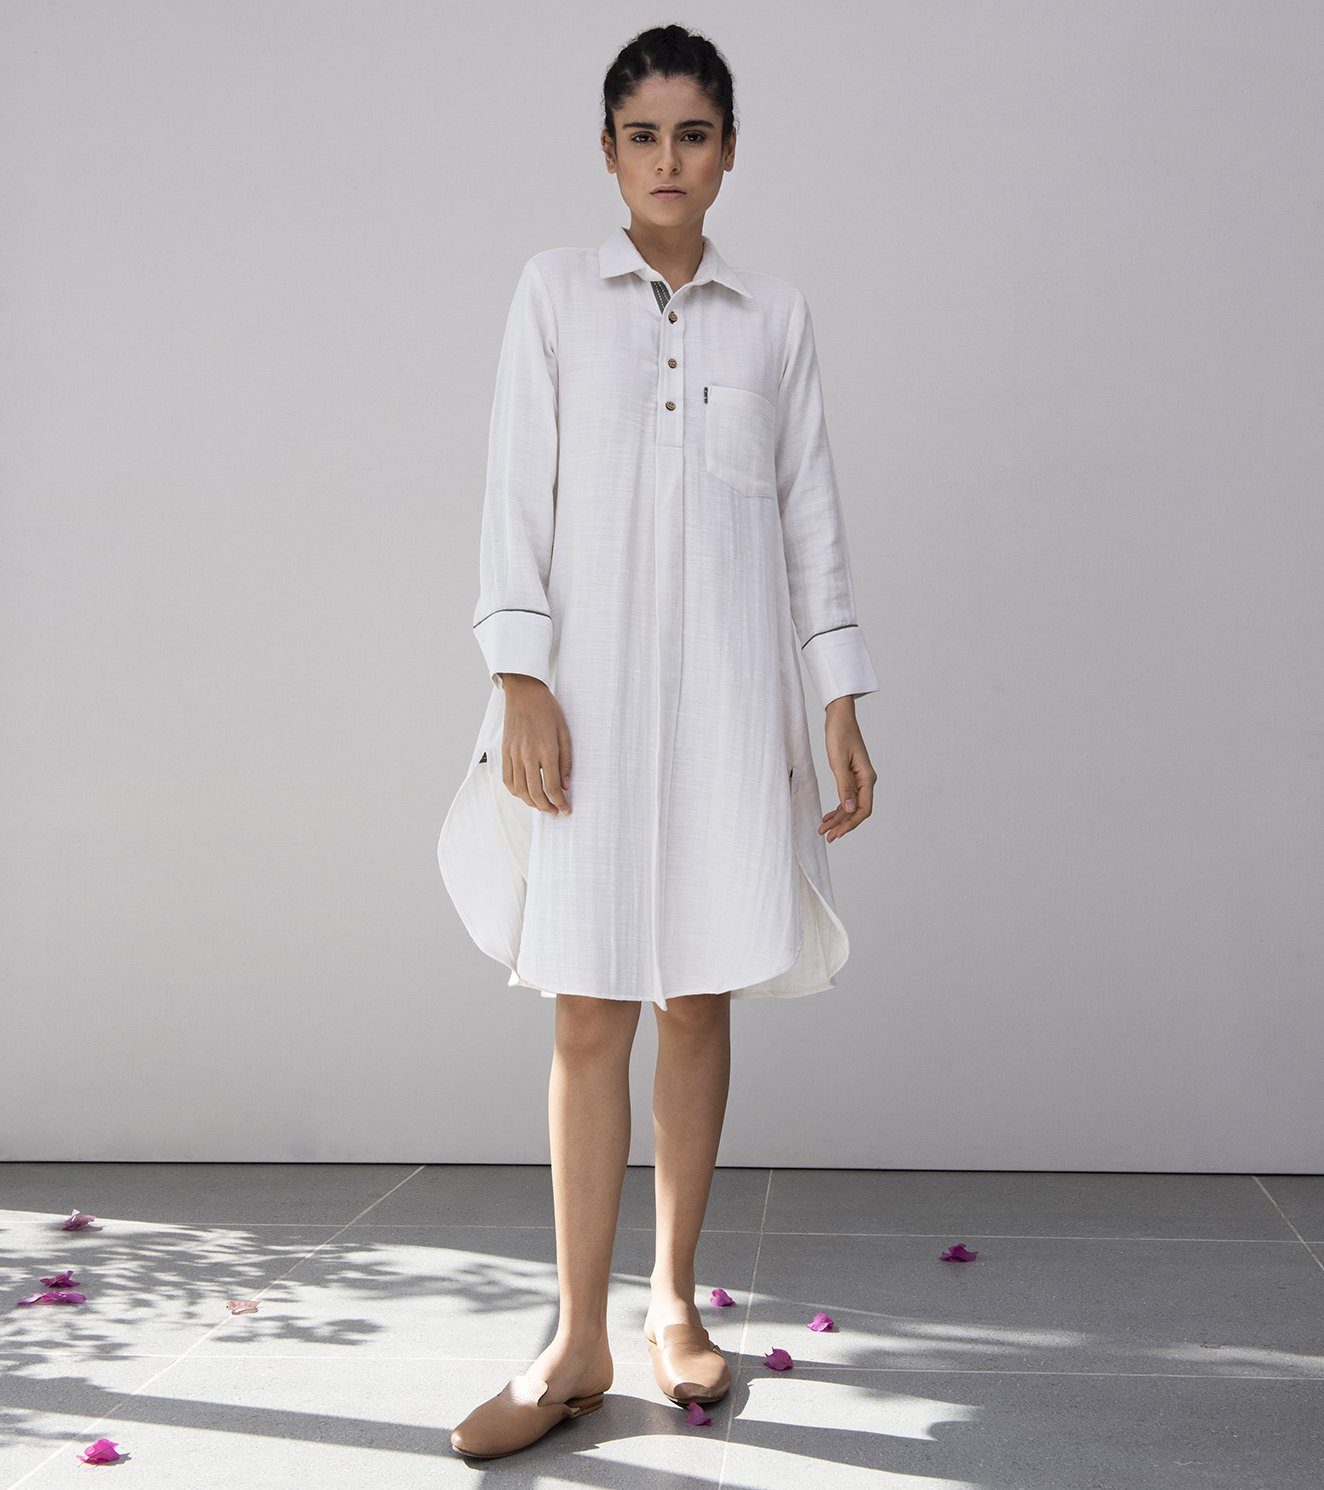 A-Line of the Lily Dress Fashion Khara Kapas